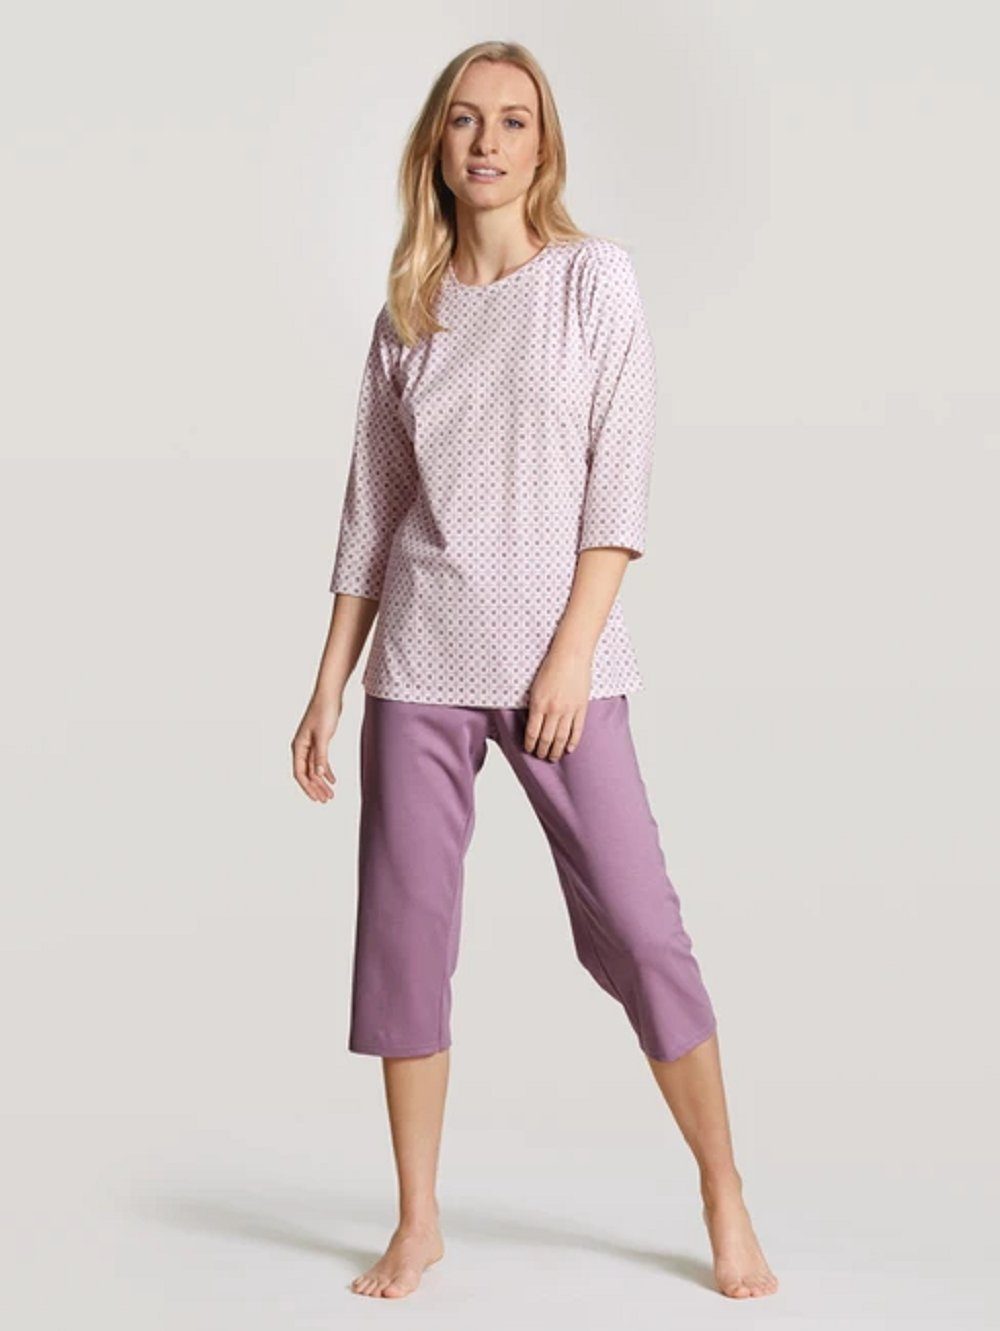 1 Baumwolle (1 Stück) CALIDA Calida 100% Pyjama tlg., 1 Pyjama lila 3/4 41257 Stück,